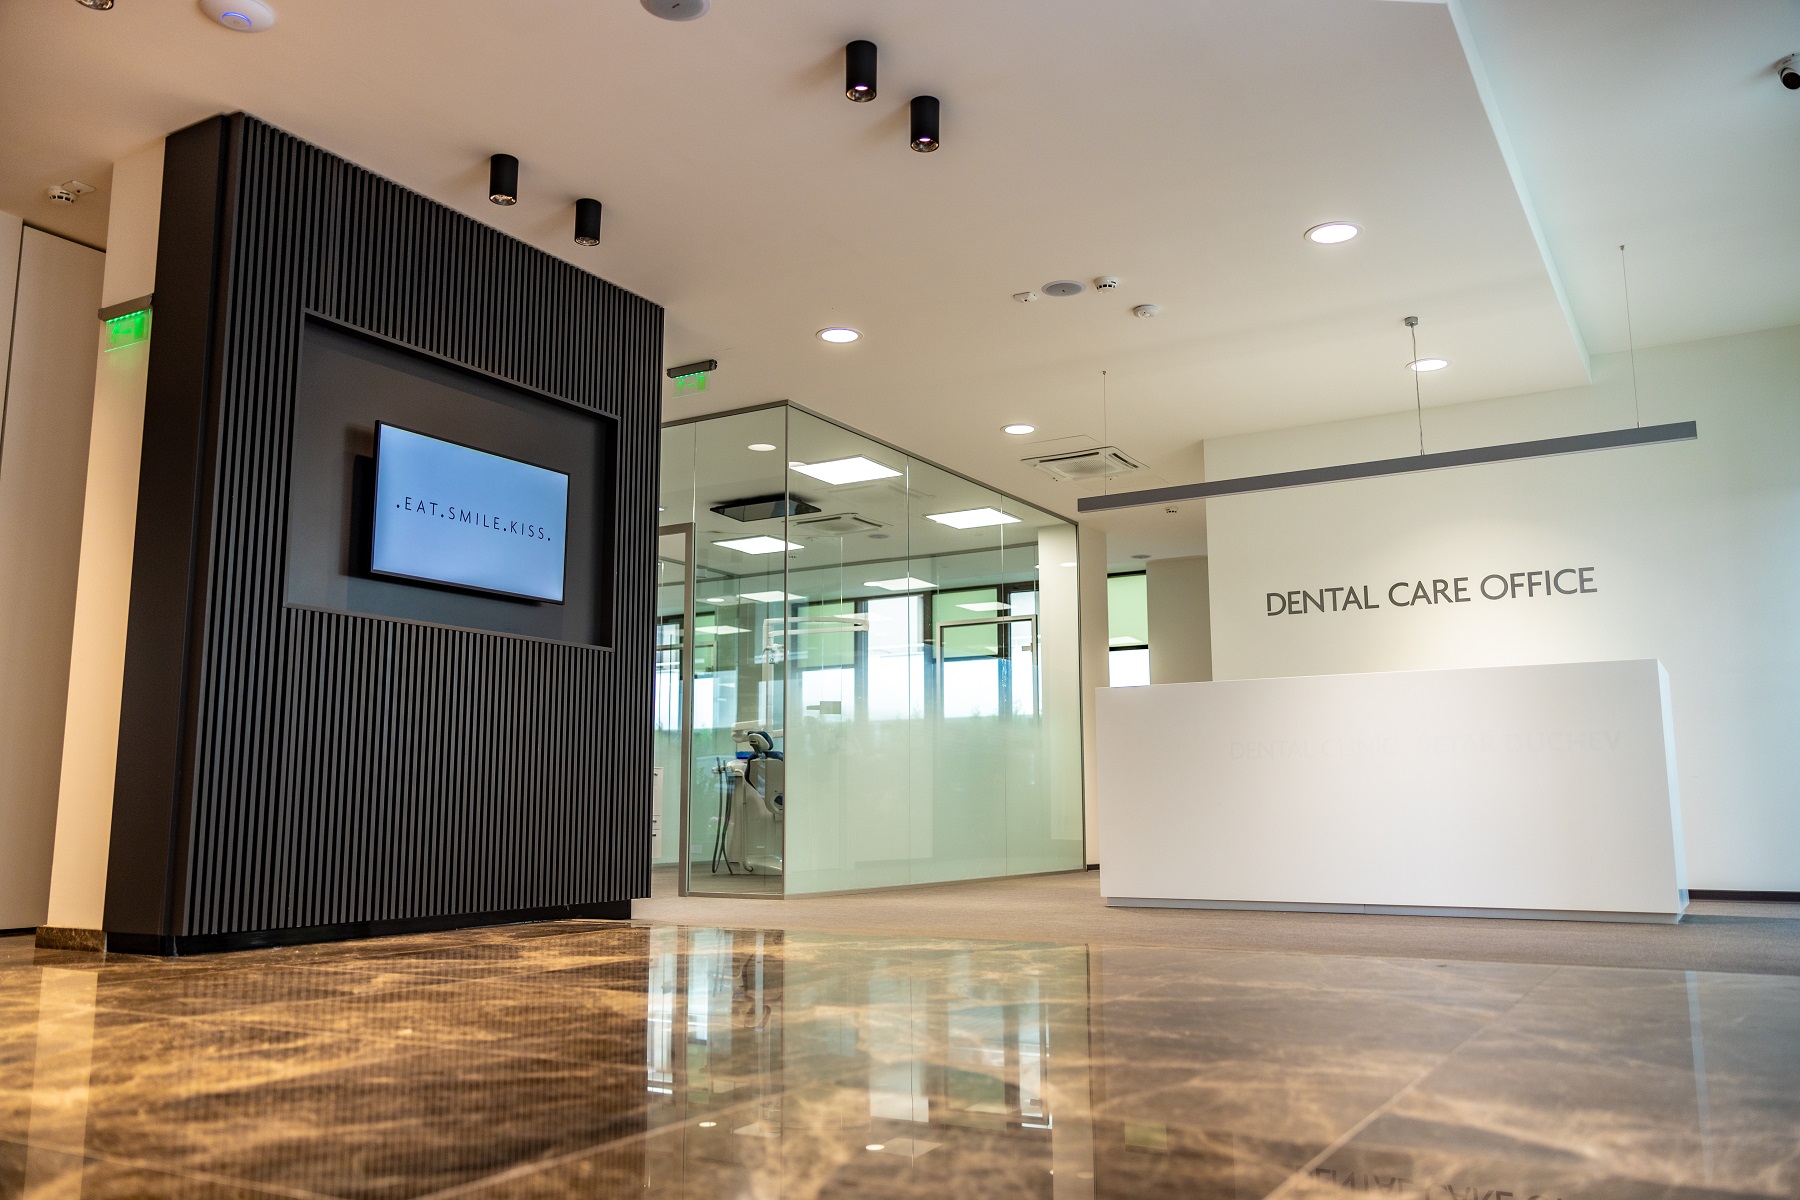 Дентална клиника от ново поколение отвори врати в София Dental Clinic Petar Duchev Kids & Dental Care Office посреща първите си пациенти